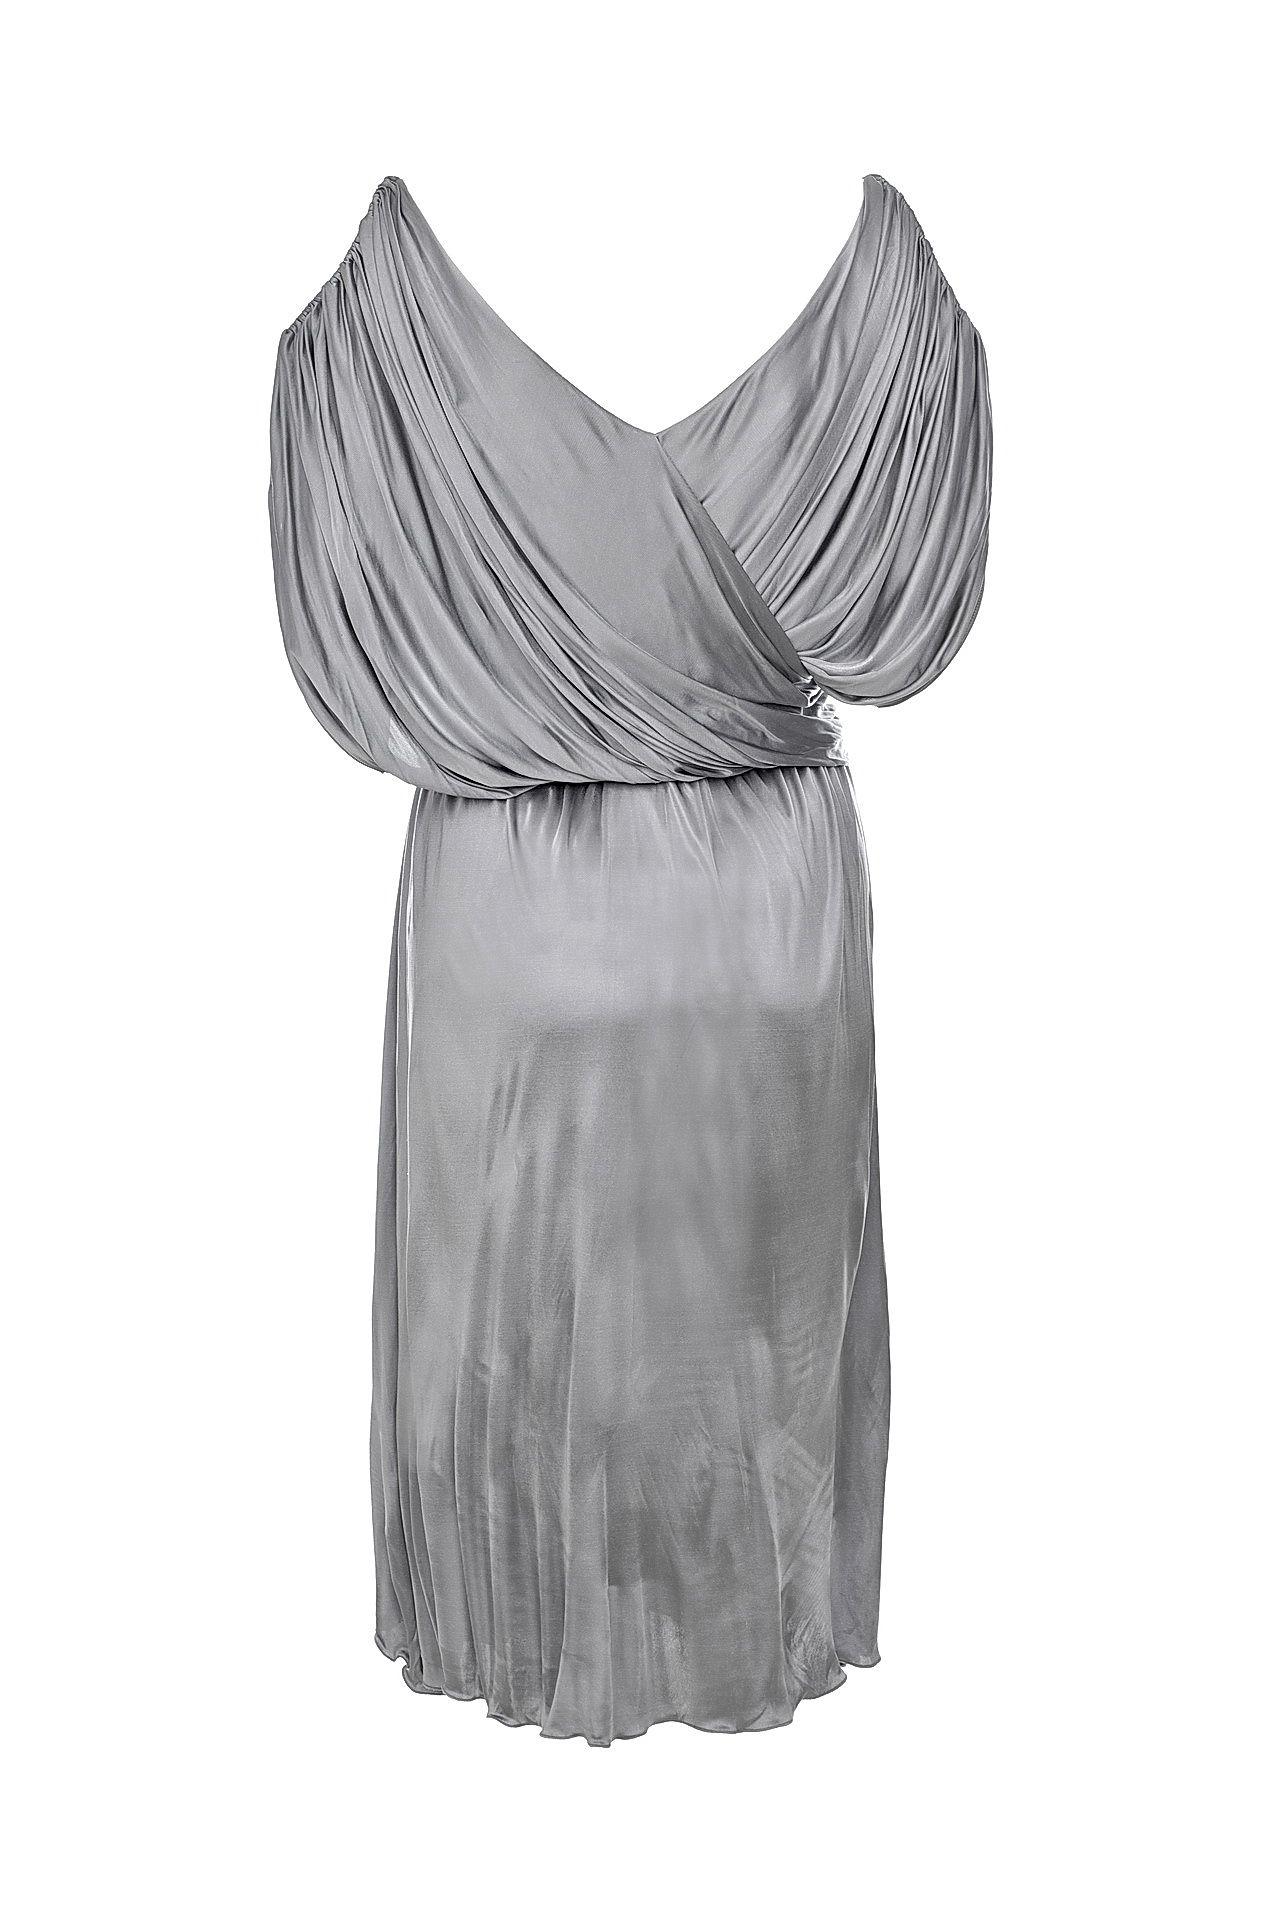 Gray F/W 2004 Look#40 Vintage Alexander Mcqueen Dress